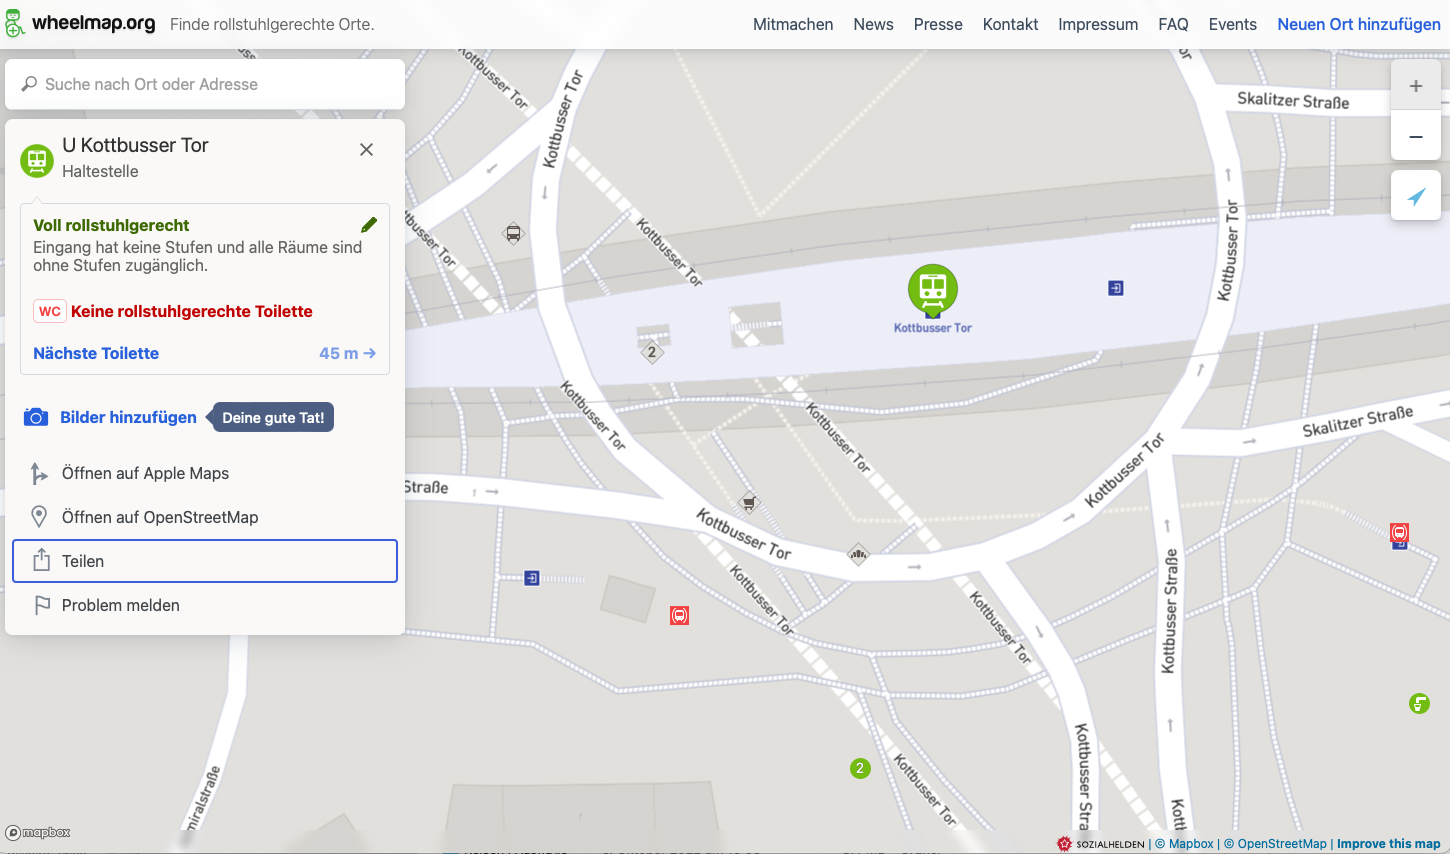 Screenshot eines Ausschnitts des digitalen Stadplans Wheelmap, auf dem Bahnhöfe, Haltestellen, gastronomische und weitere Orte markiert sind. Zu sehen ist auch ein Fenster mit Informationen zu den Rollstuhl-bezogenen Gegebenheiten eines U-Bahnhofs in Berlin